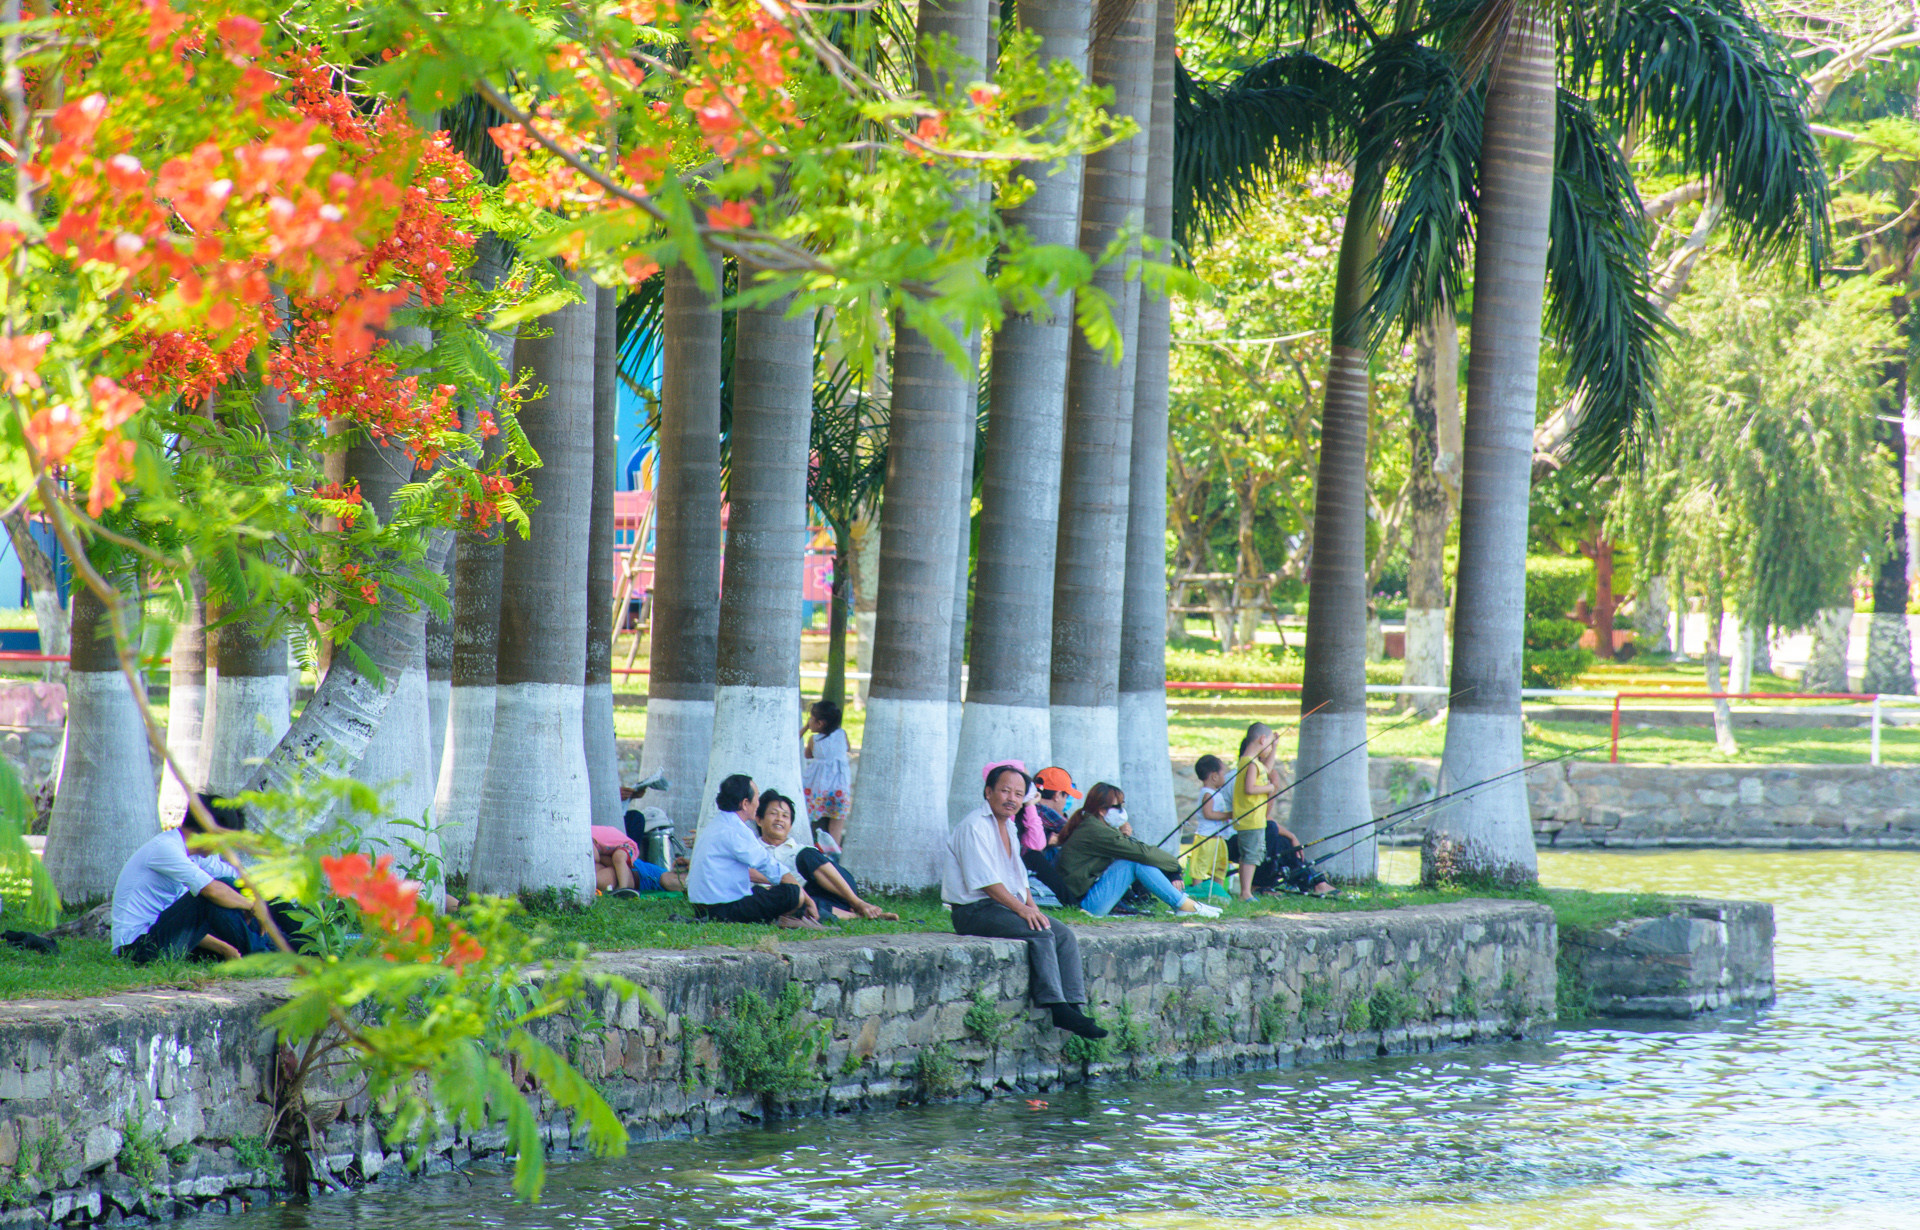 29 March  Park in Danang city, Vietnam